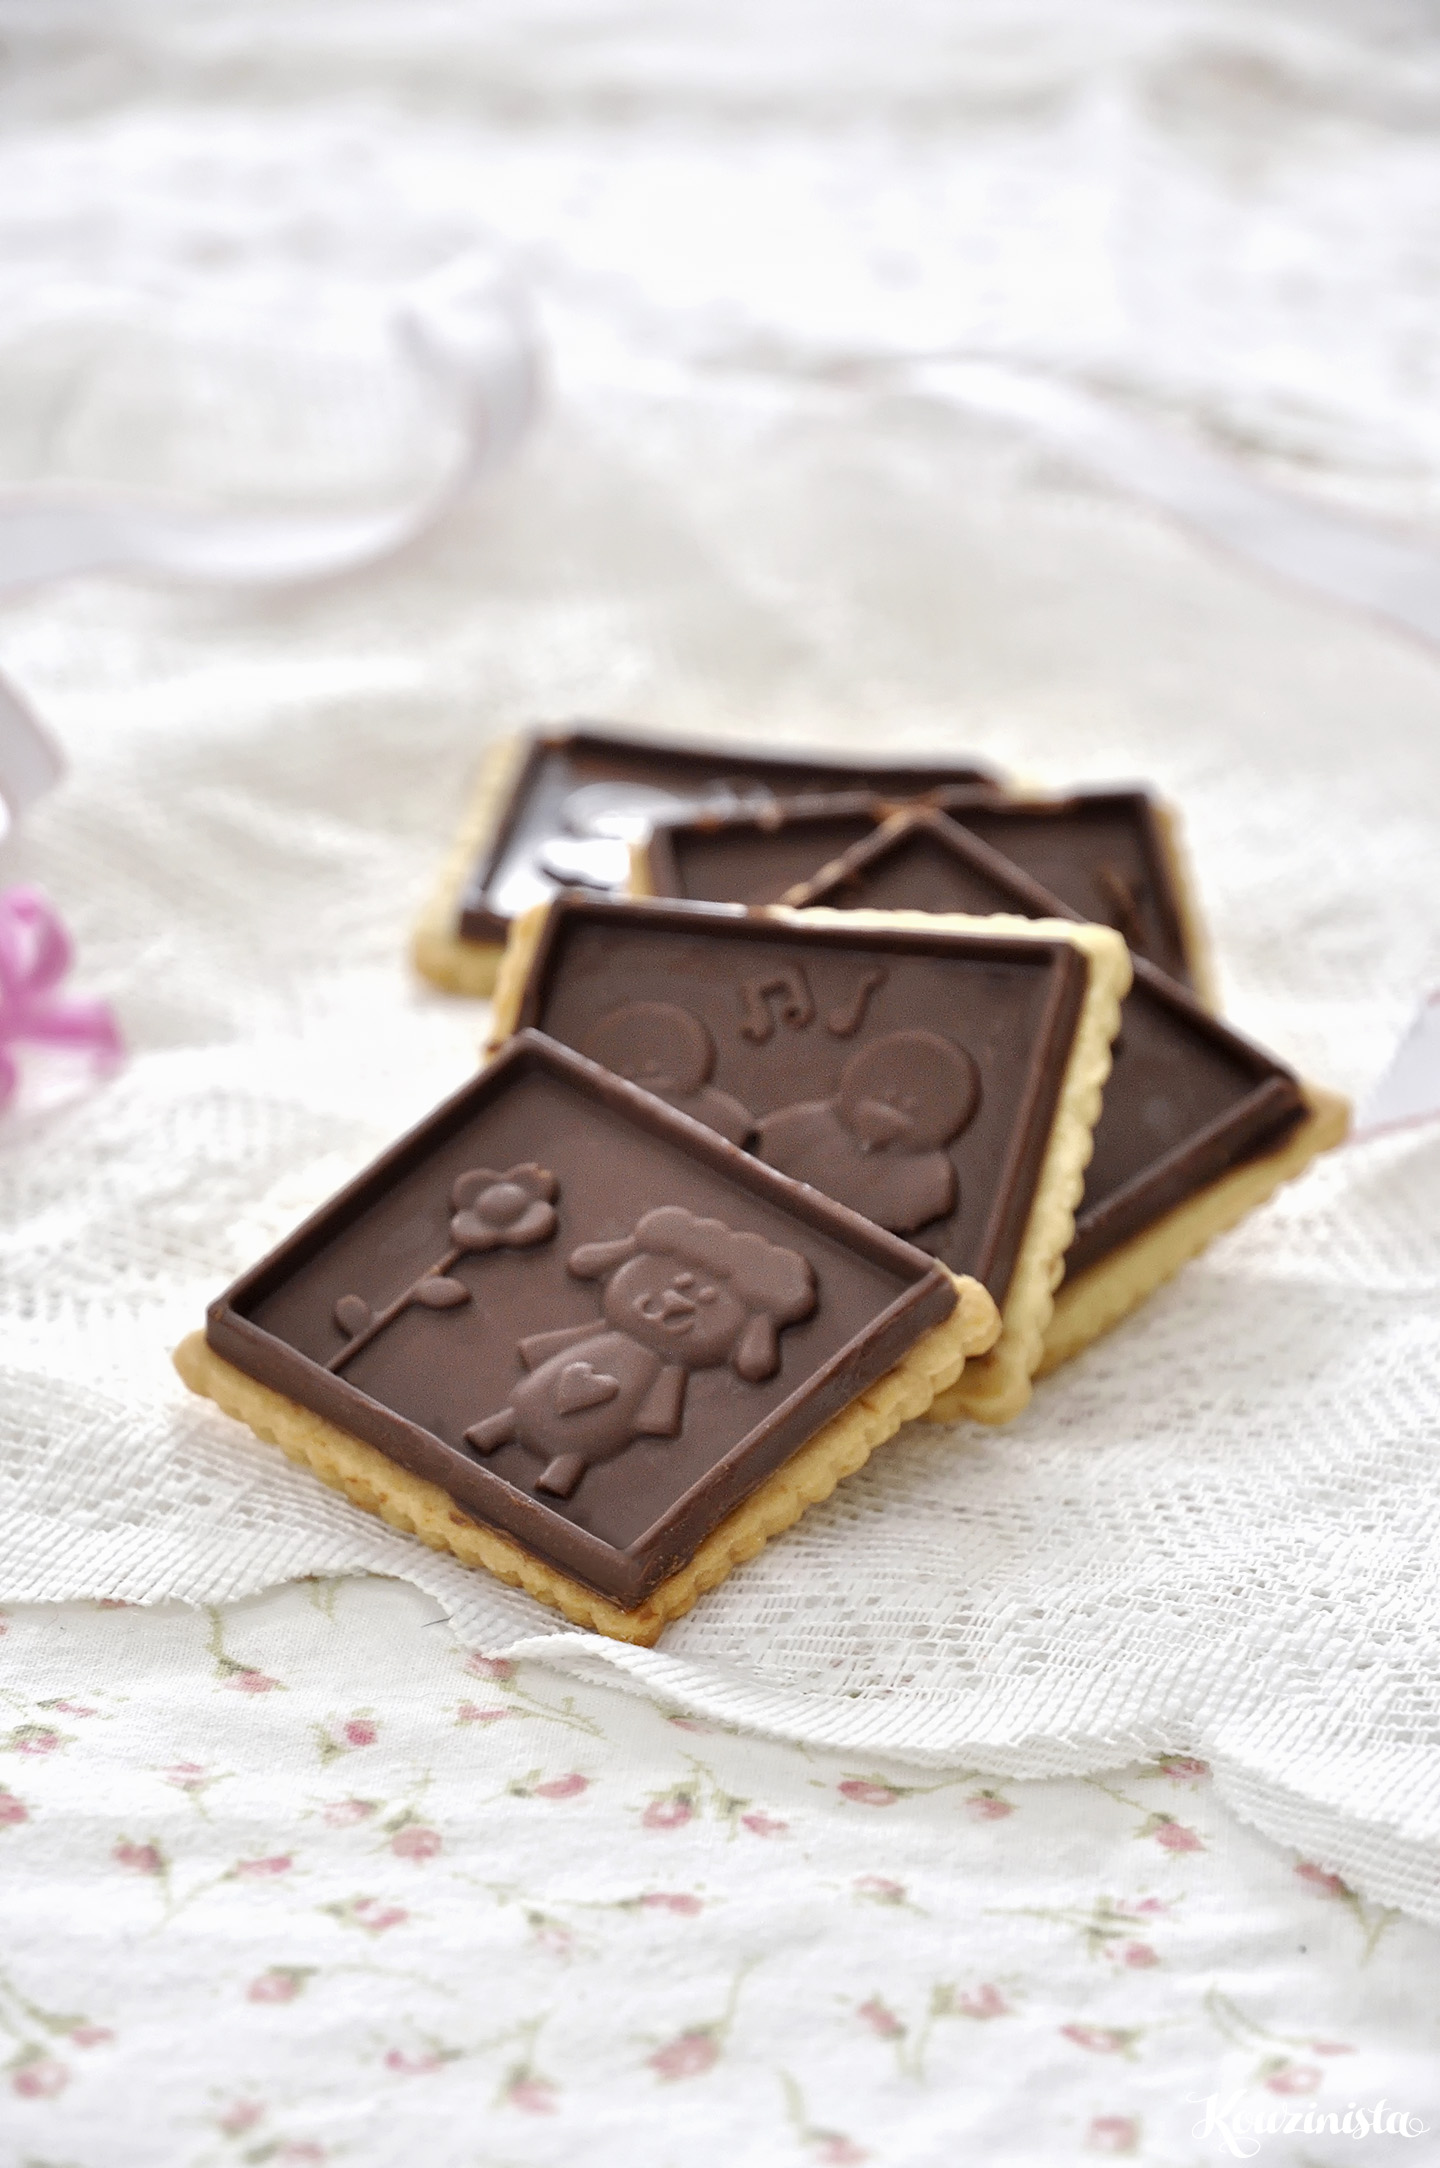 Μπισκότα με επικάλυψη σοκολάτας / Chocolate covered cut-out biscuits